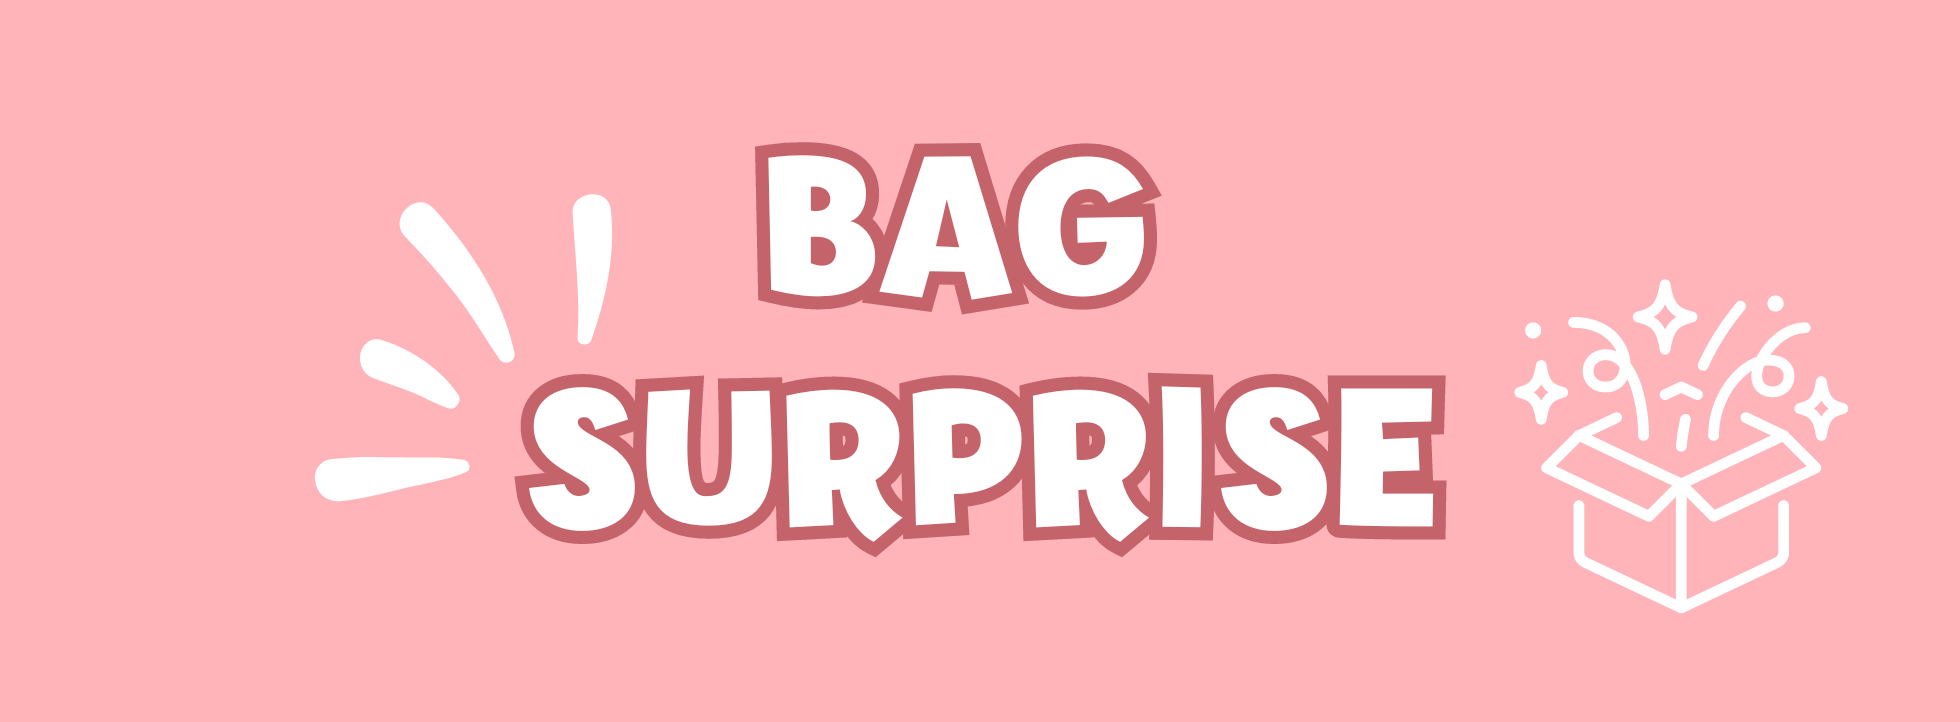 Bag surprise